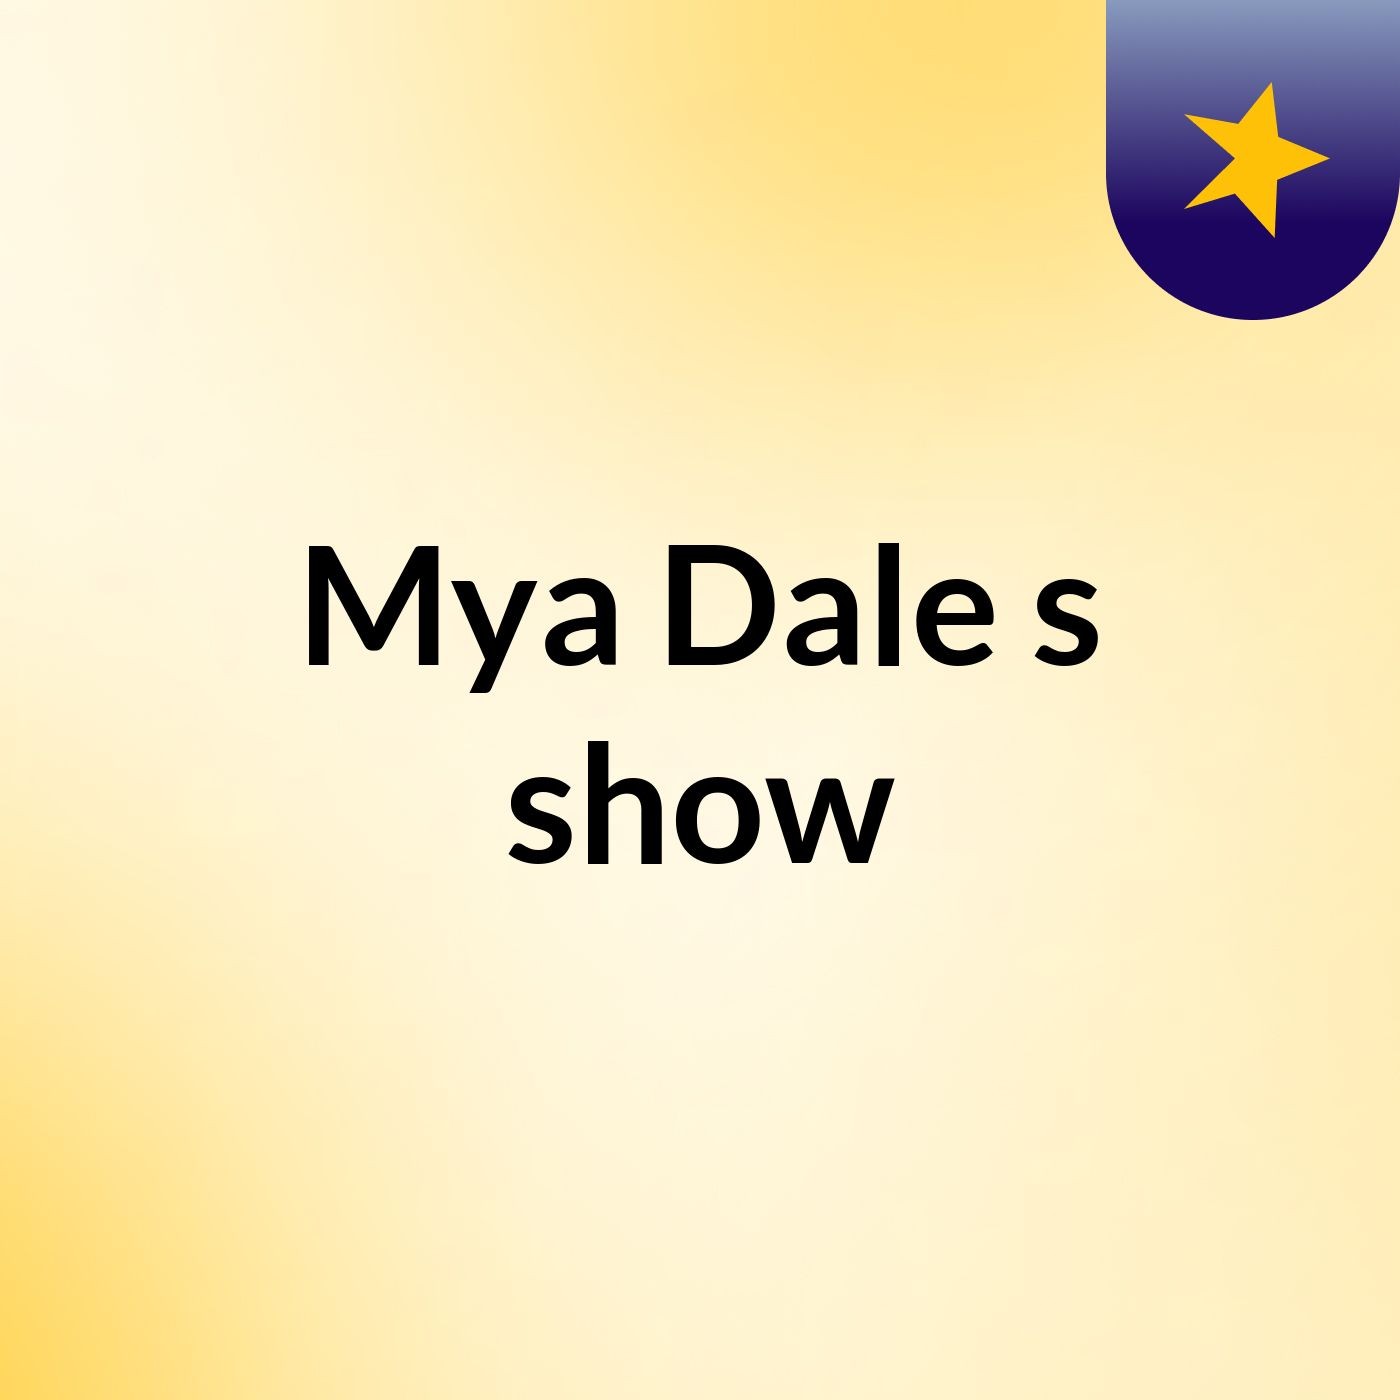 Mya Dale's show